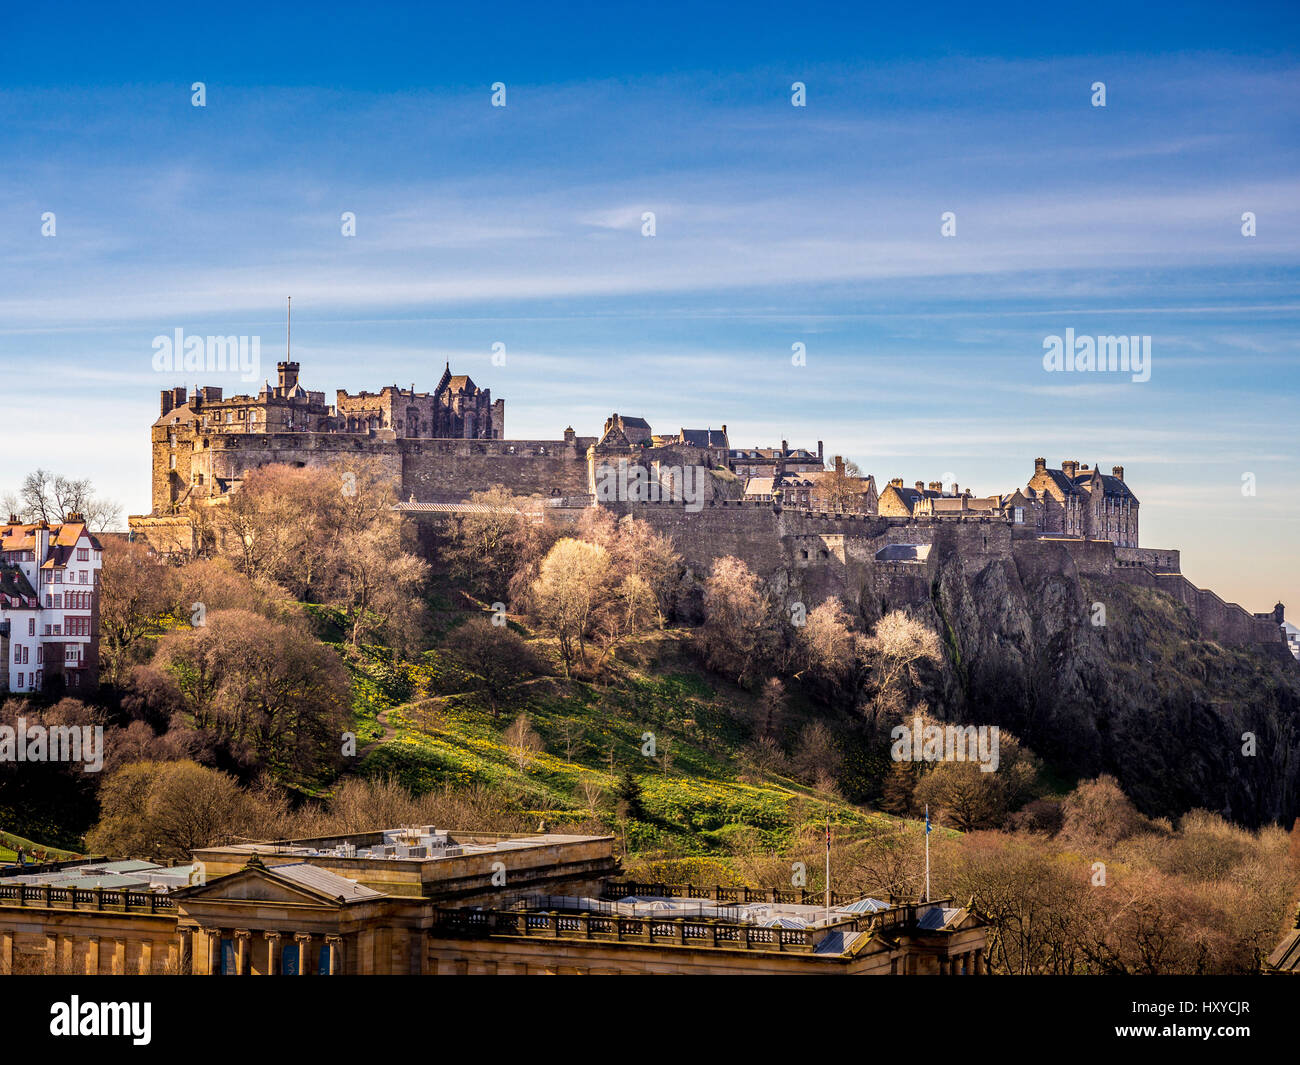 Castillo de Edimburgo con Princes Street Gardens y la Galería Nacional Escocesa en primer plano. Edimburgo, Escocia, Reino Unido. Foto de stock